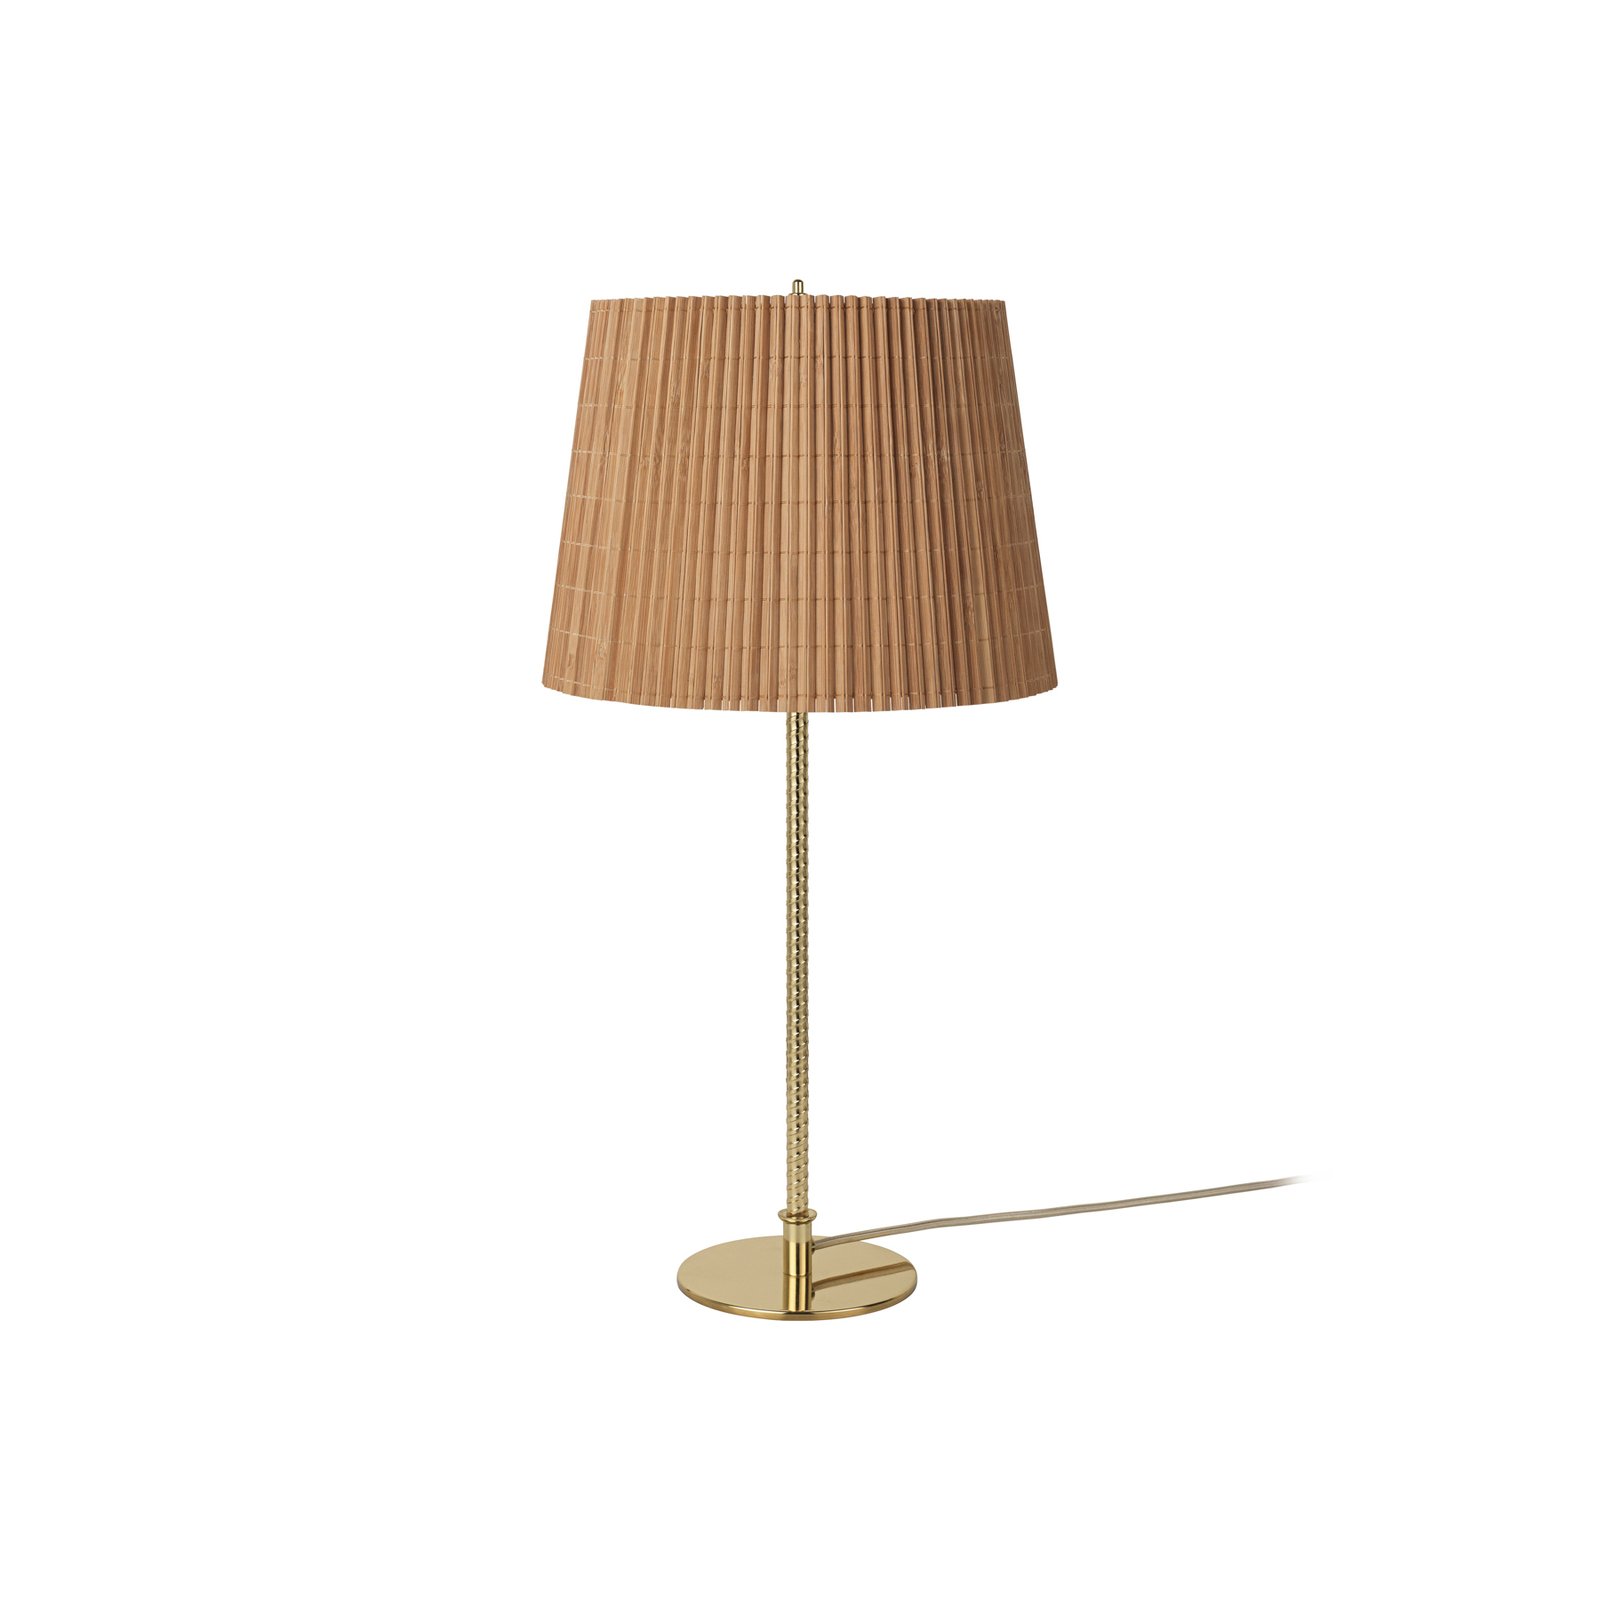 GUBI lampe à poser 9205, laiton, abat-jour en bambou, hauteur 58 cm